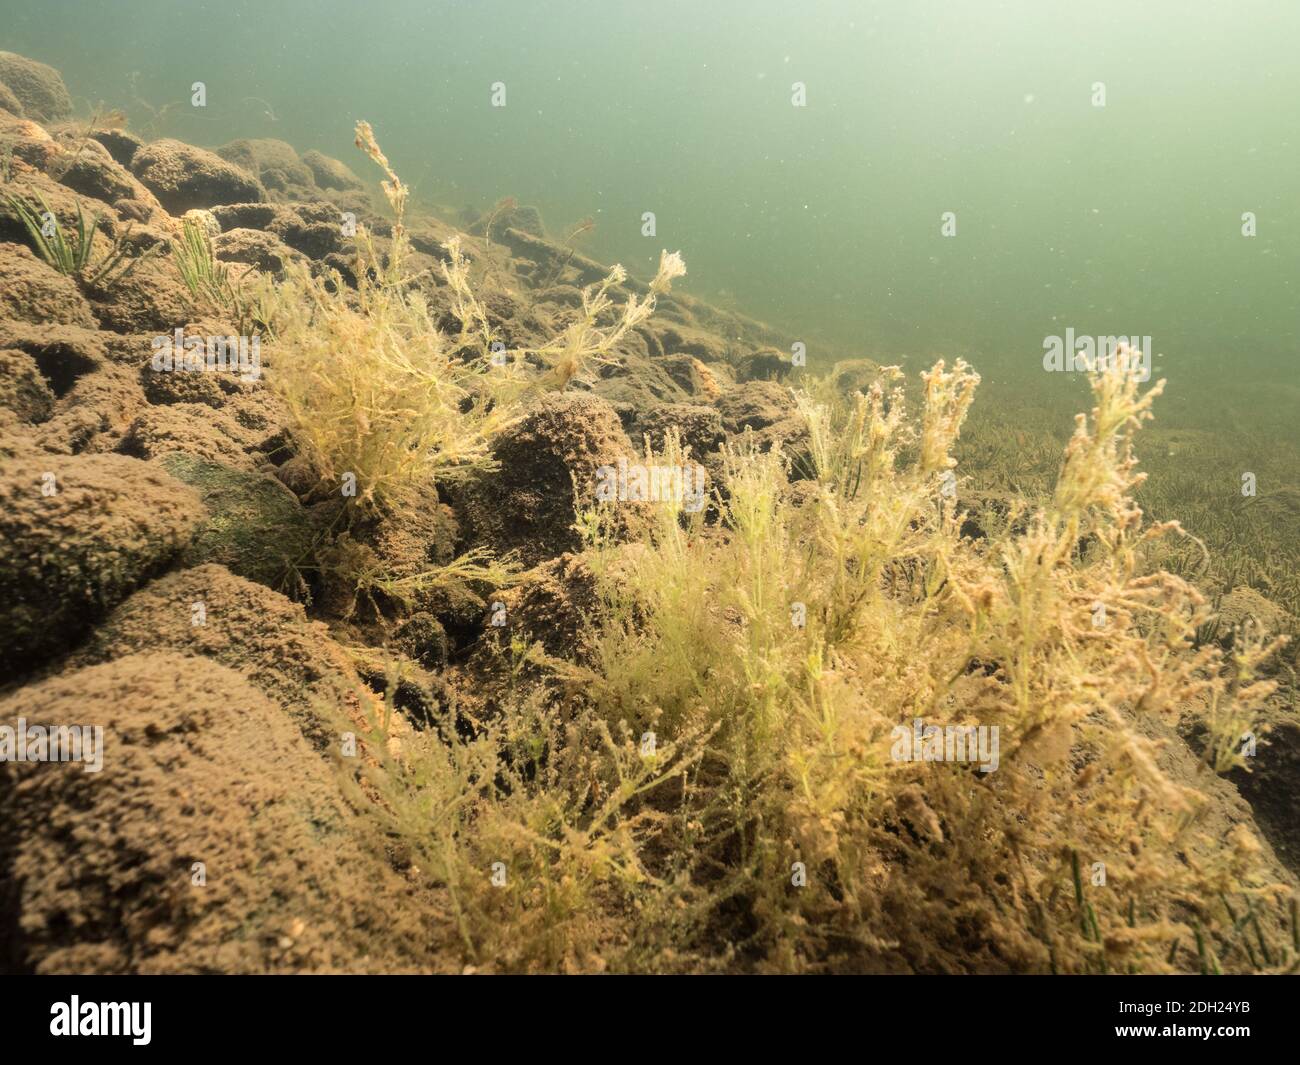 Nitella charophyte algae on lake bottom Stock Photo